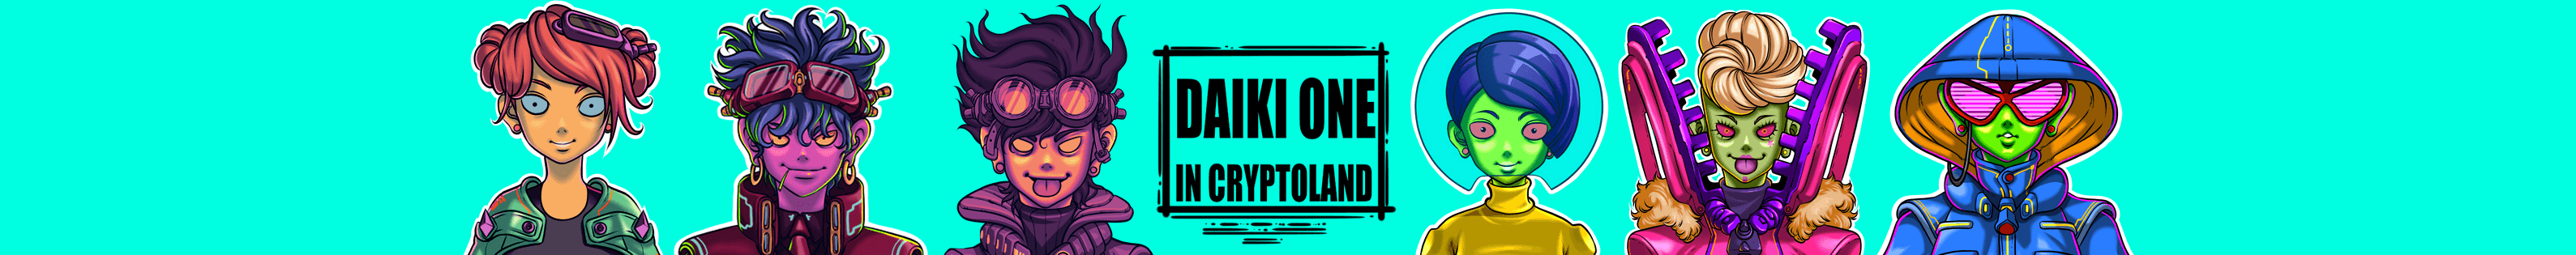 DaikiOne3 banner